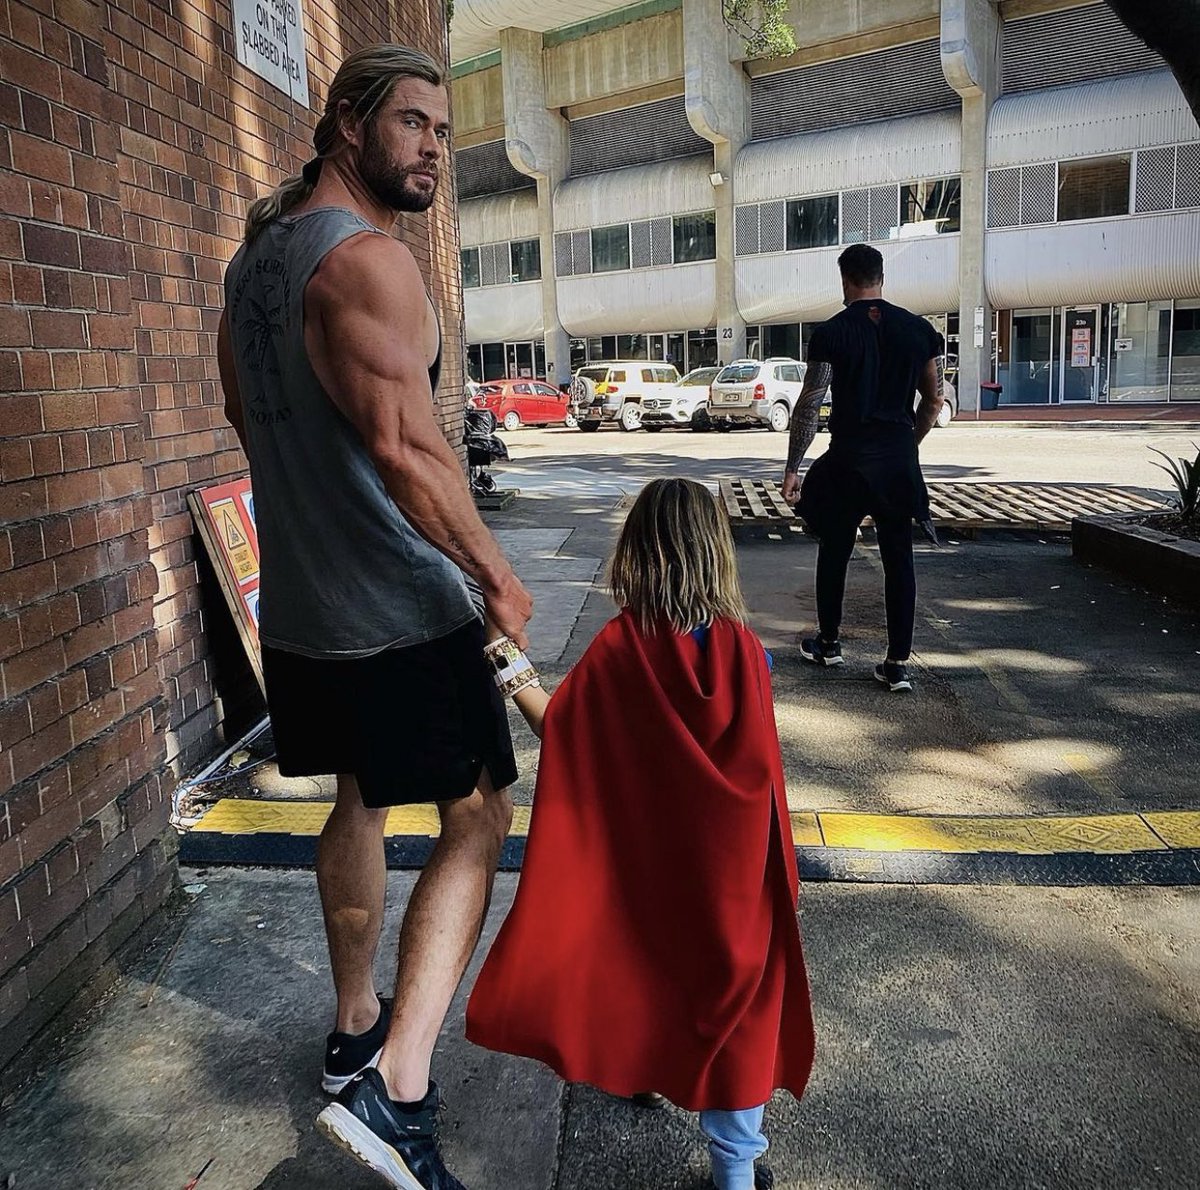 RT @lovethundernews: New Thor behind the scenes photo

Chris Hemsworth (chrishemsworth on IG) https://t.co/8oG0jgMSUL